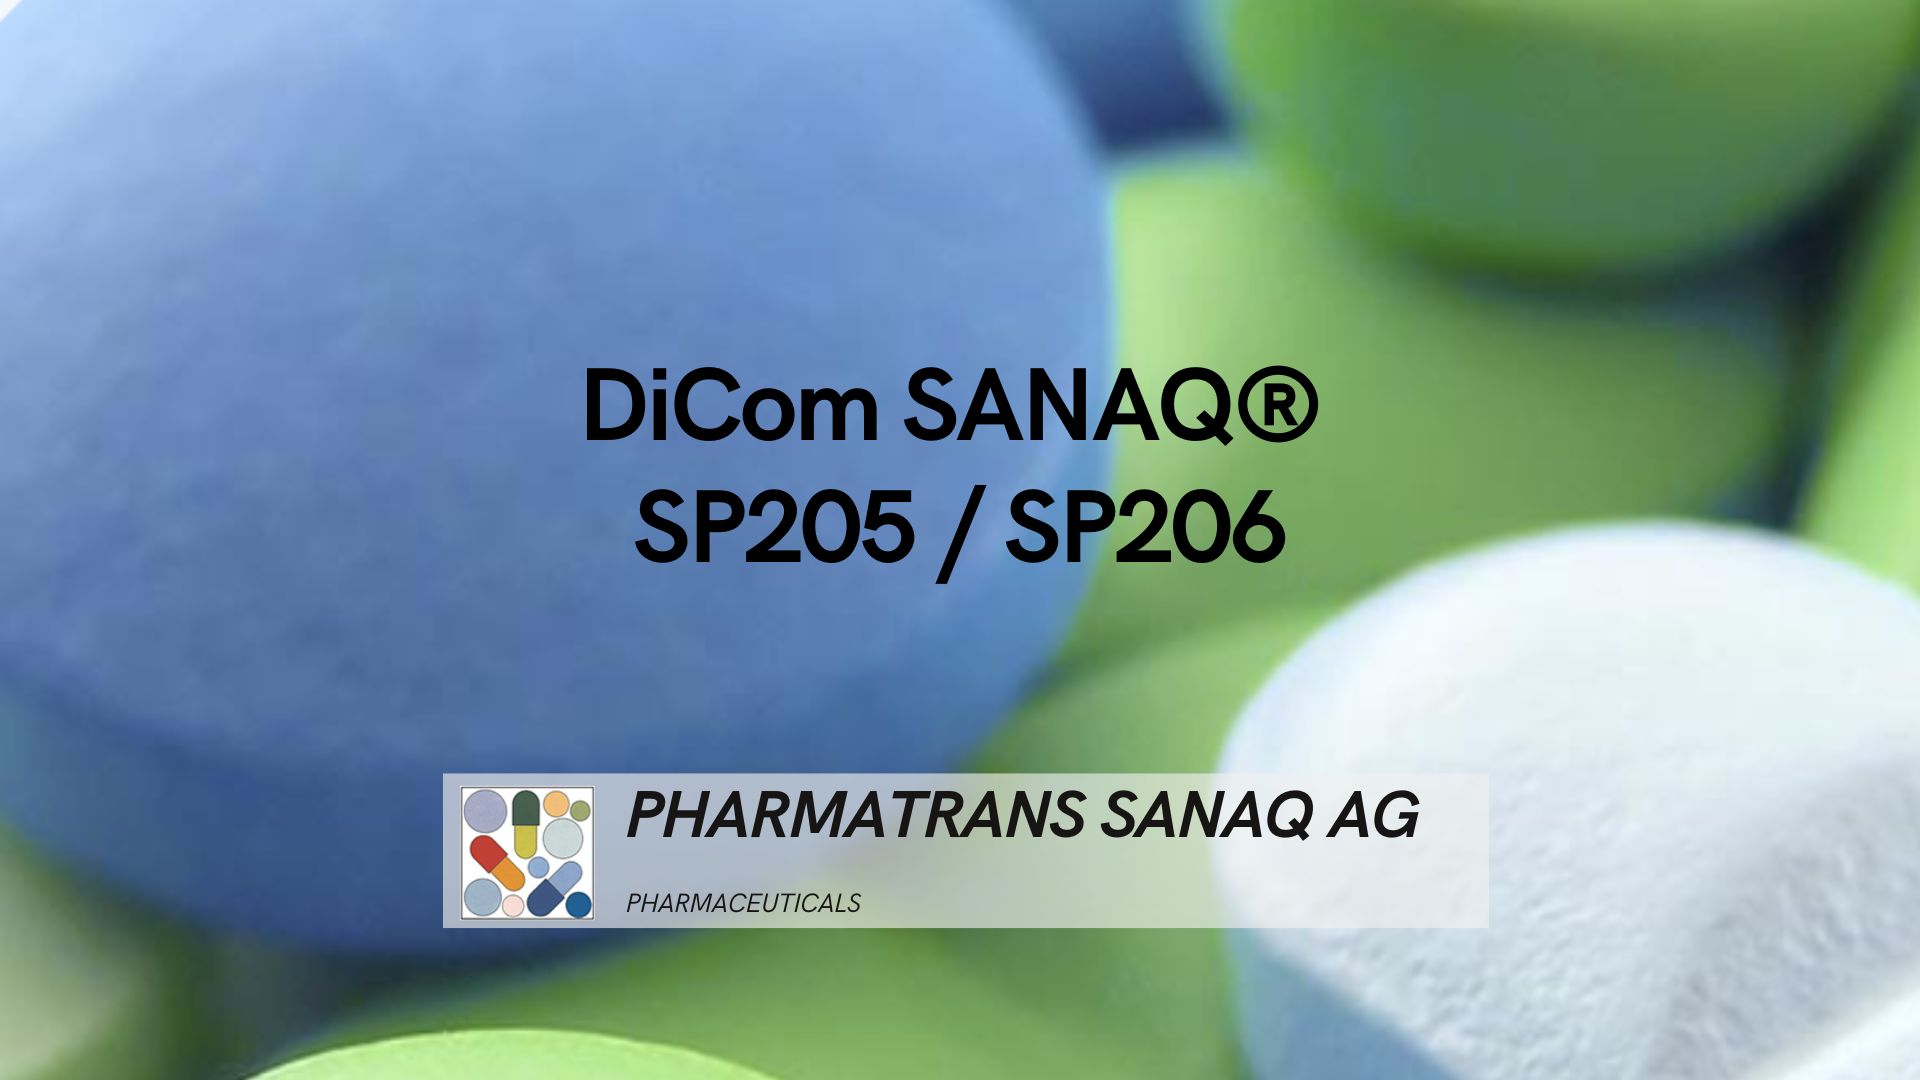 Pharmatrans Sanaq AG_DiCom SANAQ SP205_SP206